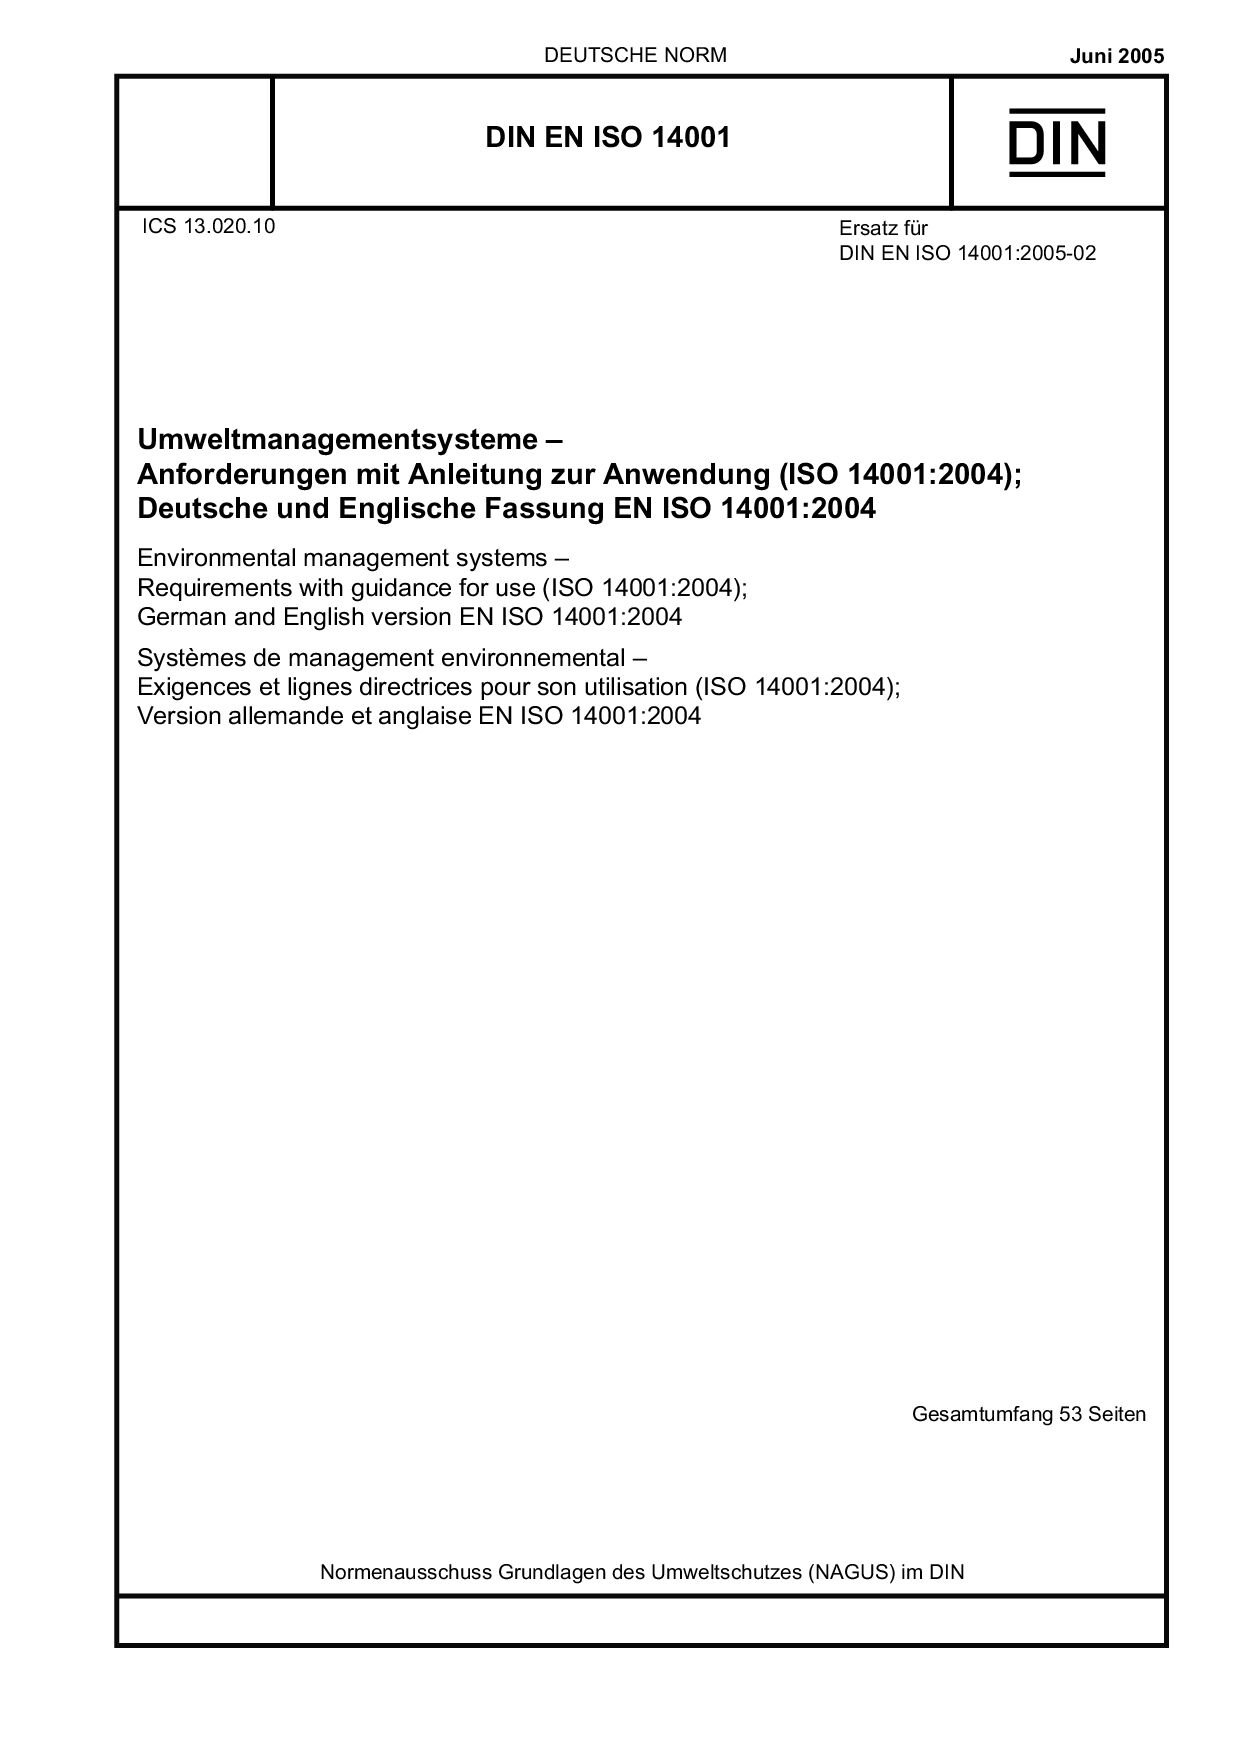 DIN EN ISO 14001:2005